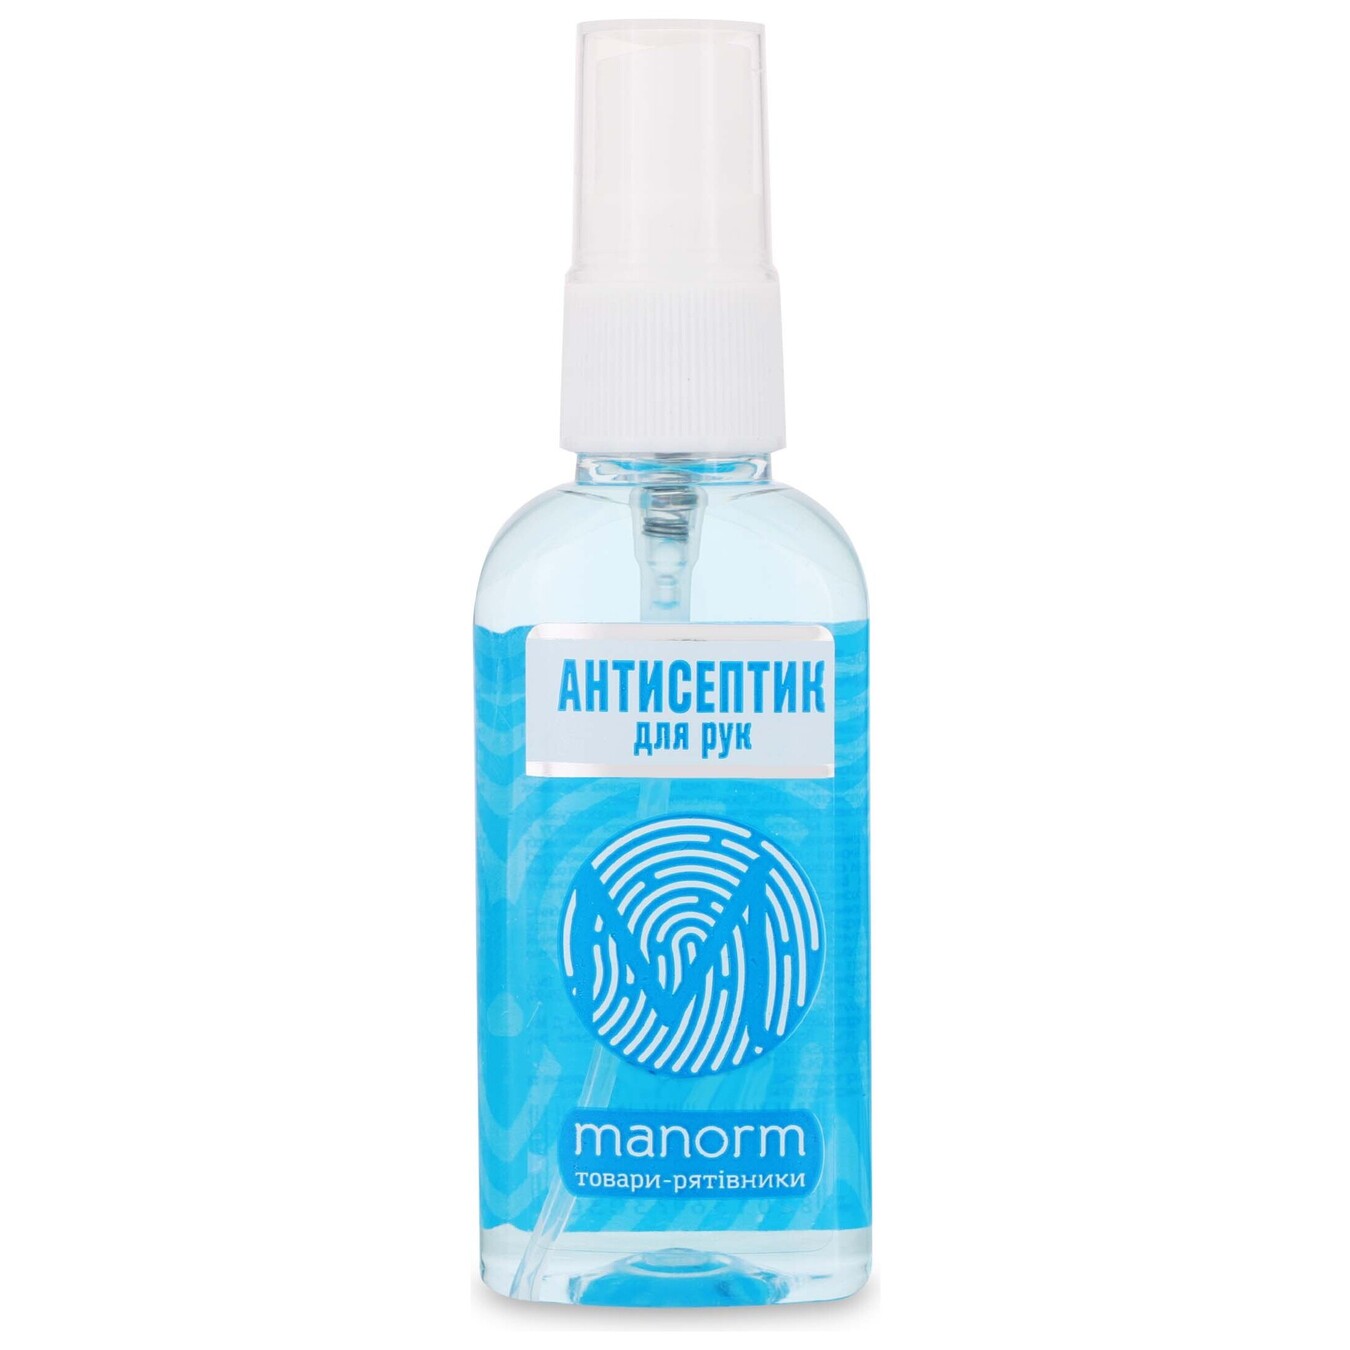 Manorm Aquamarine Disinfectant Antiseptic for Hands 50ml